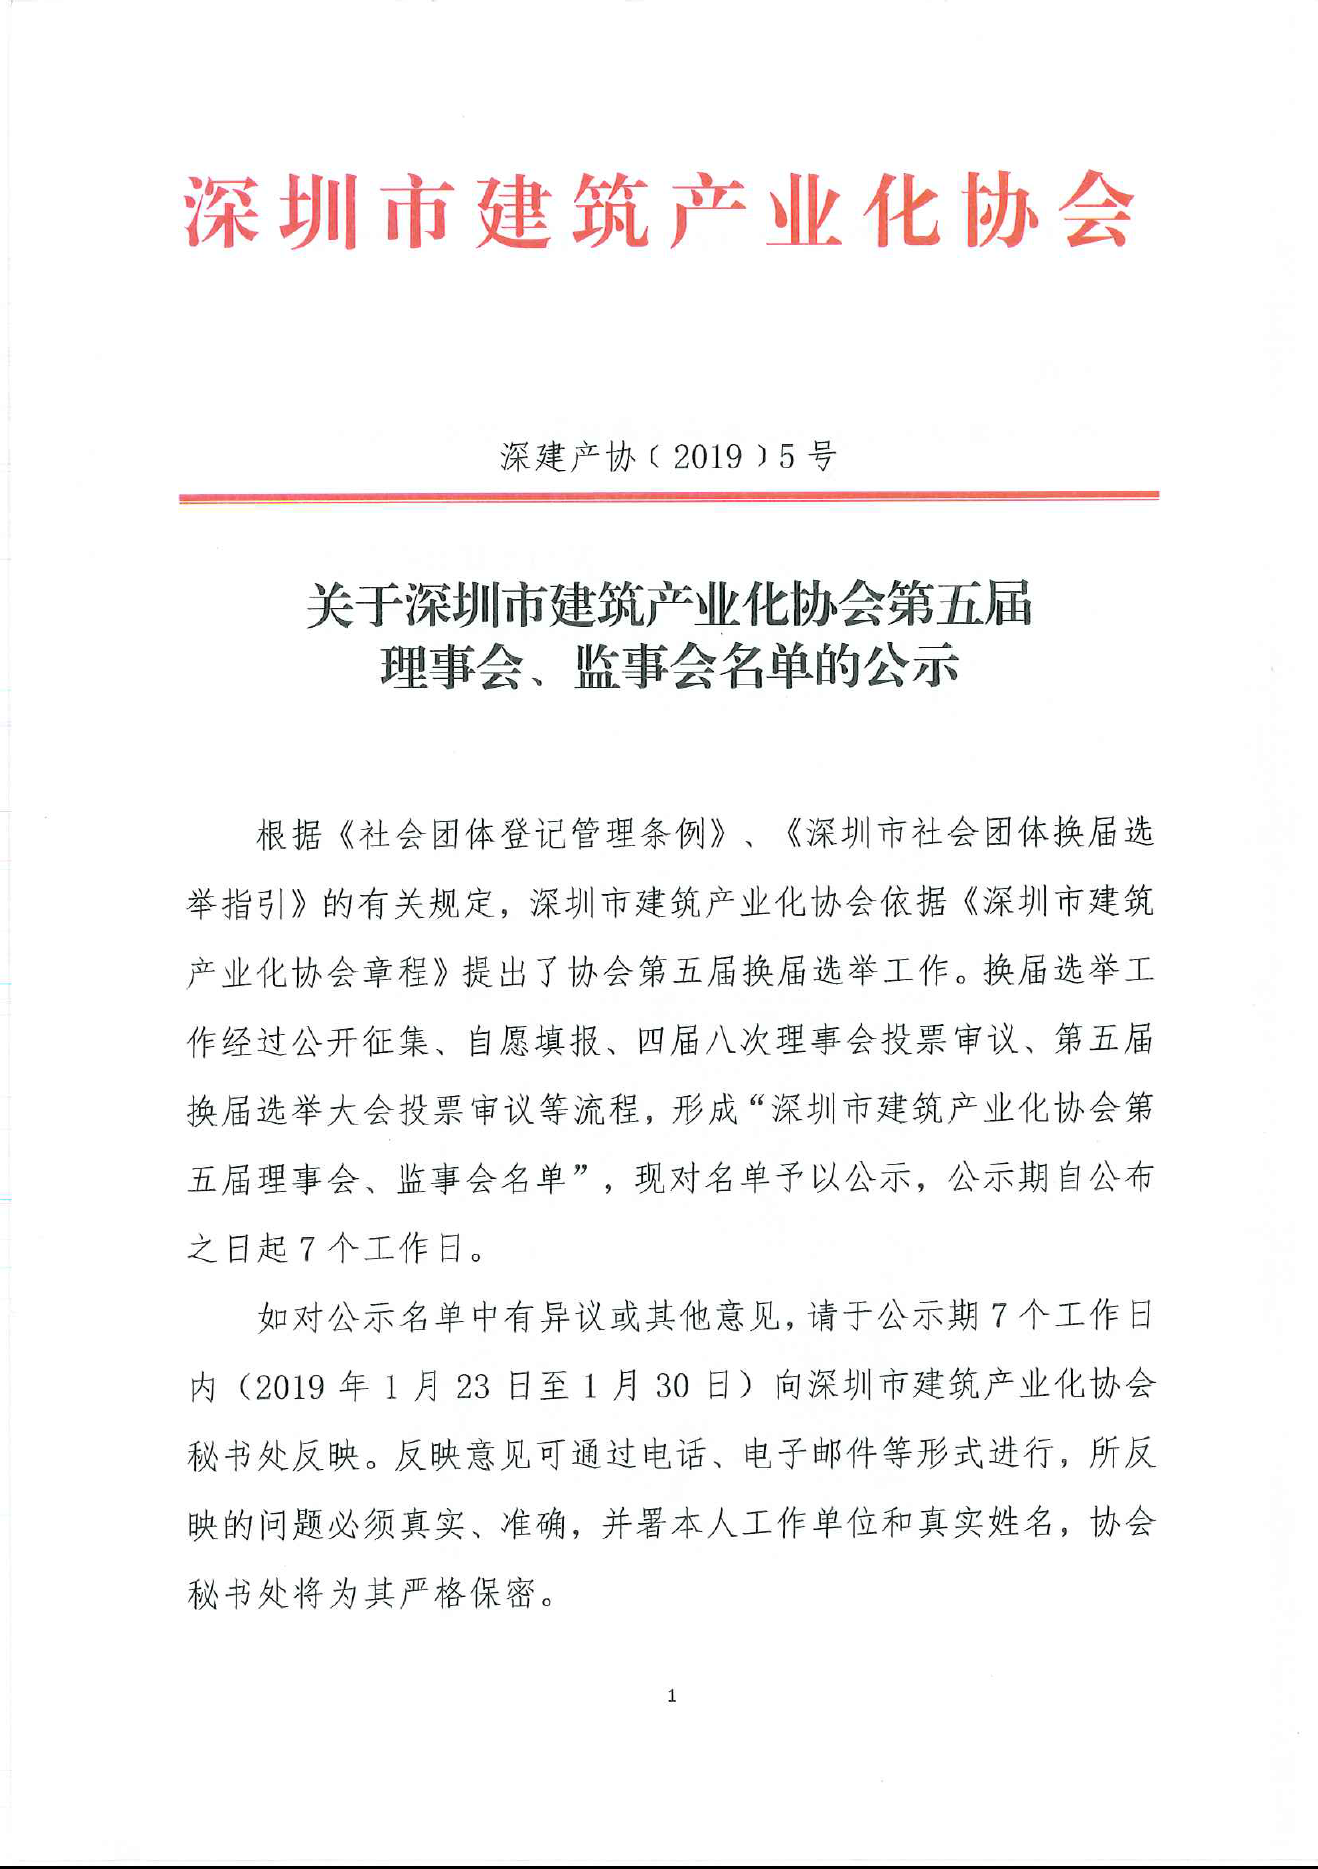 关于深圳市建筑产业化协会第五届理事会、监事会名单的公示